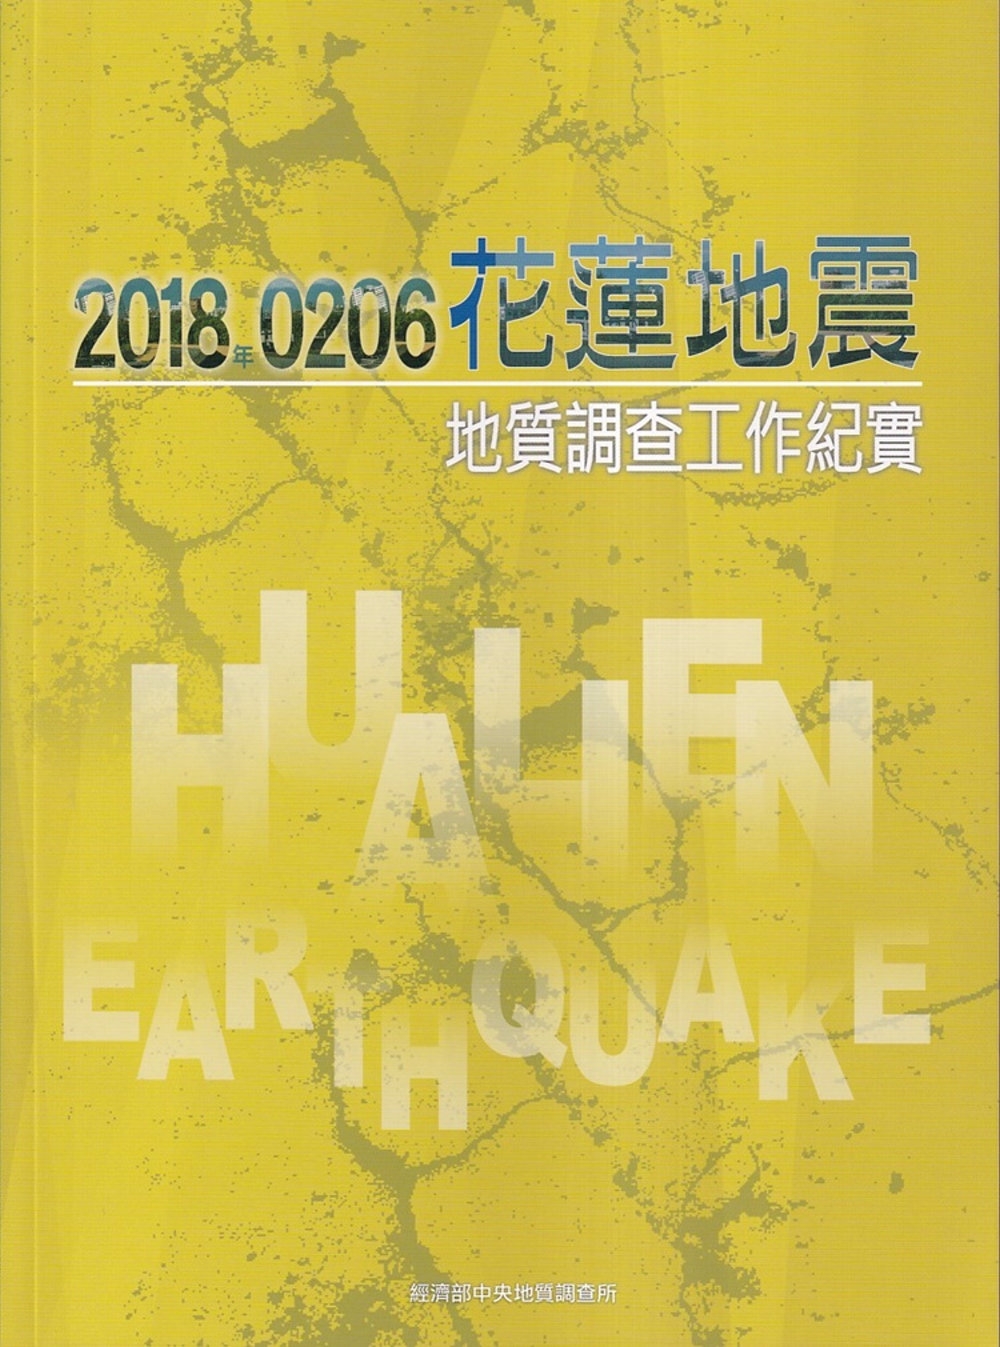 2018年0206花蓮地震地質調查工作紀實